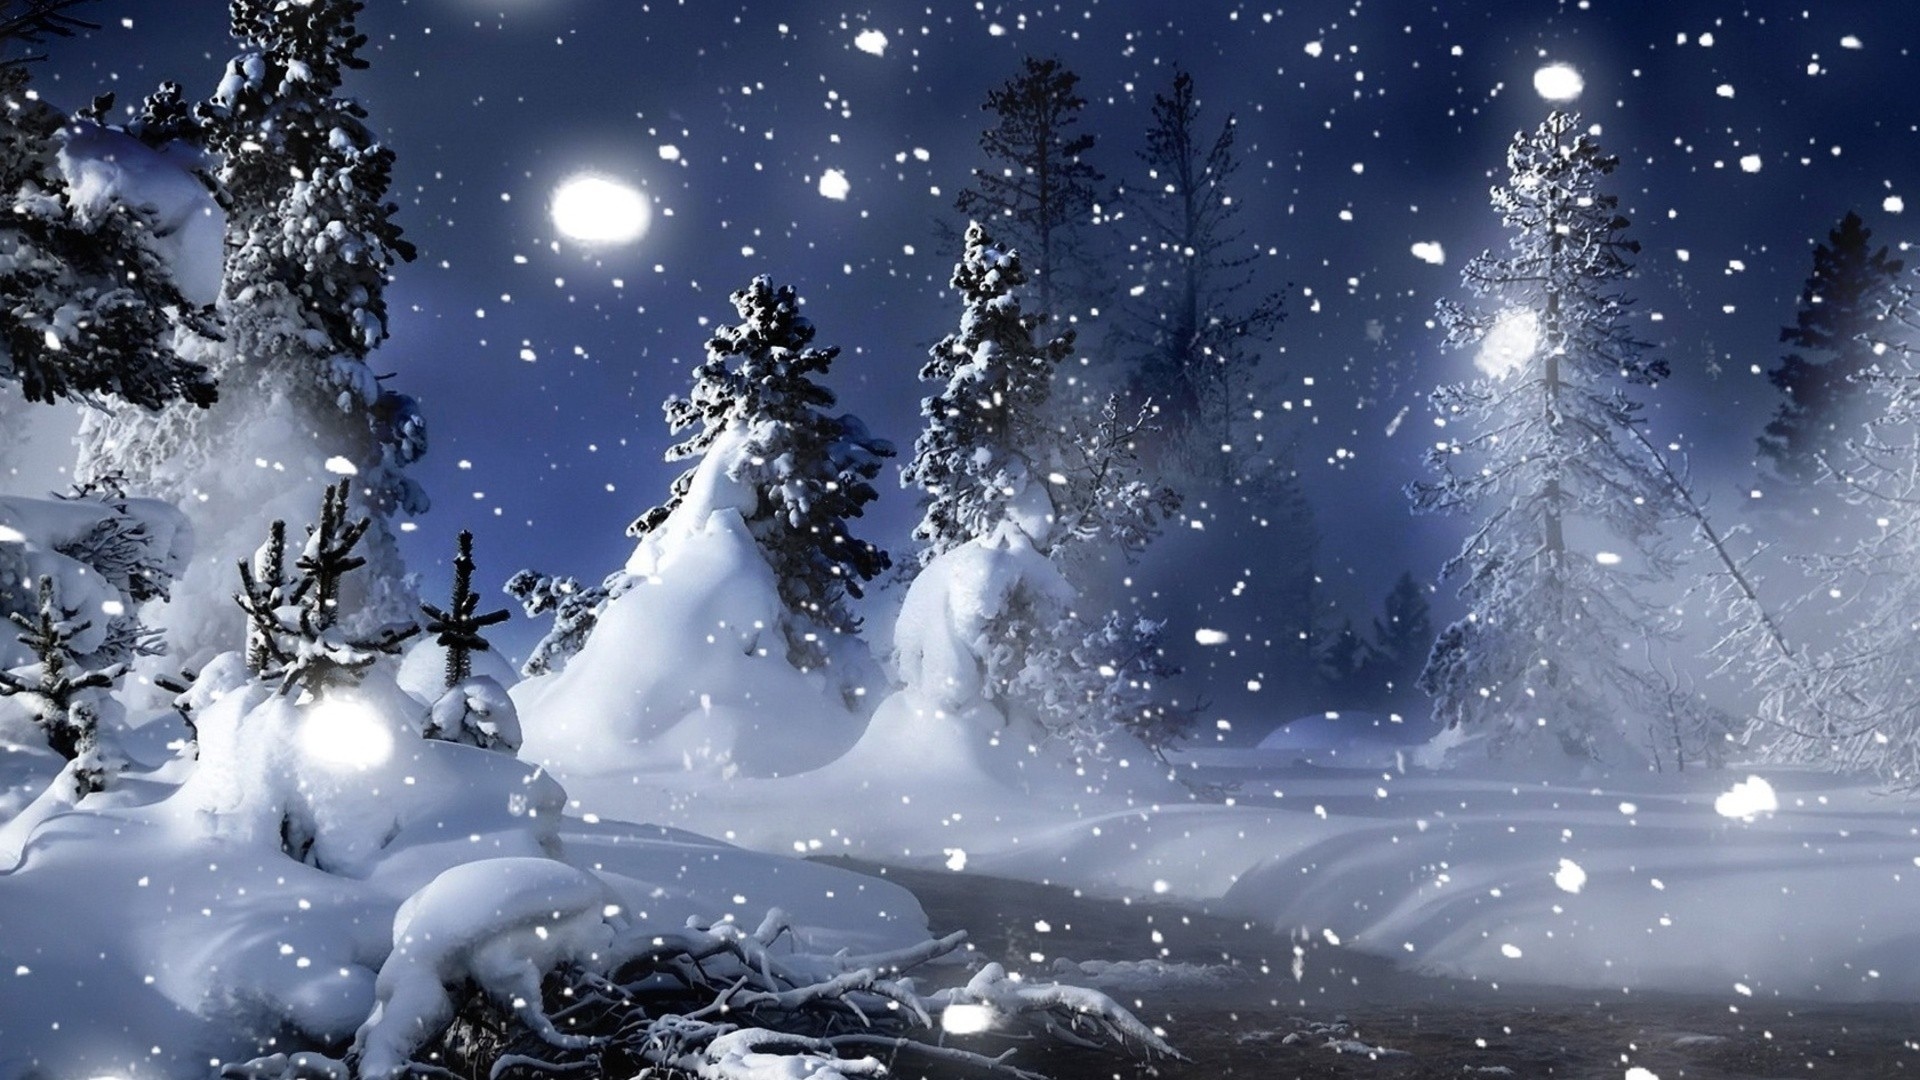 Giáng sinh là thời điểm đầy rực rỡ và ấm áp. Bức ảnh này sẽ đưa bạn đến với không khí ấm áp của ngày lễ giáng sinh. Khung cảnh tuyết trắng bao phủ và những món quà đầy sắc màu sẽ làm bạn cảm nhận được niềm vui và hạnh phúc của mùa giáng sinh.